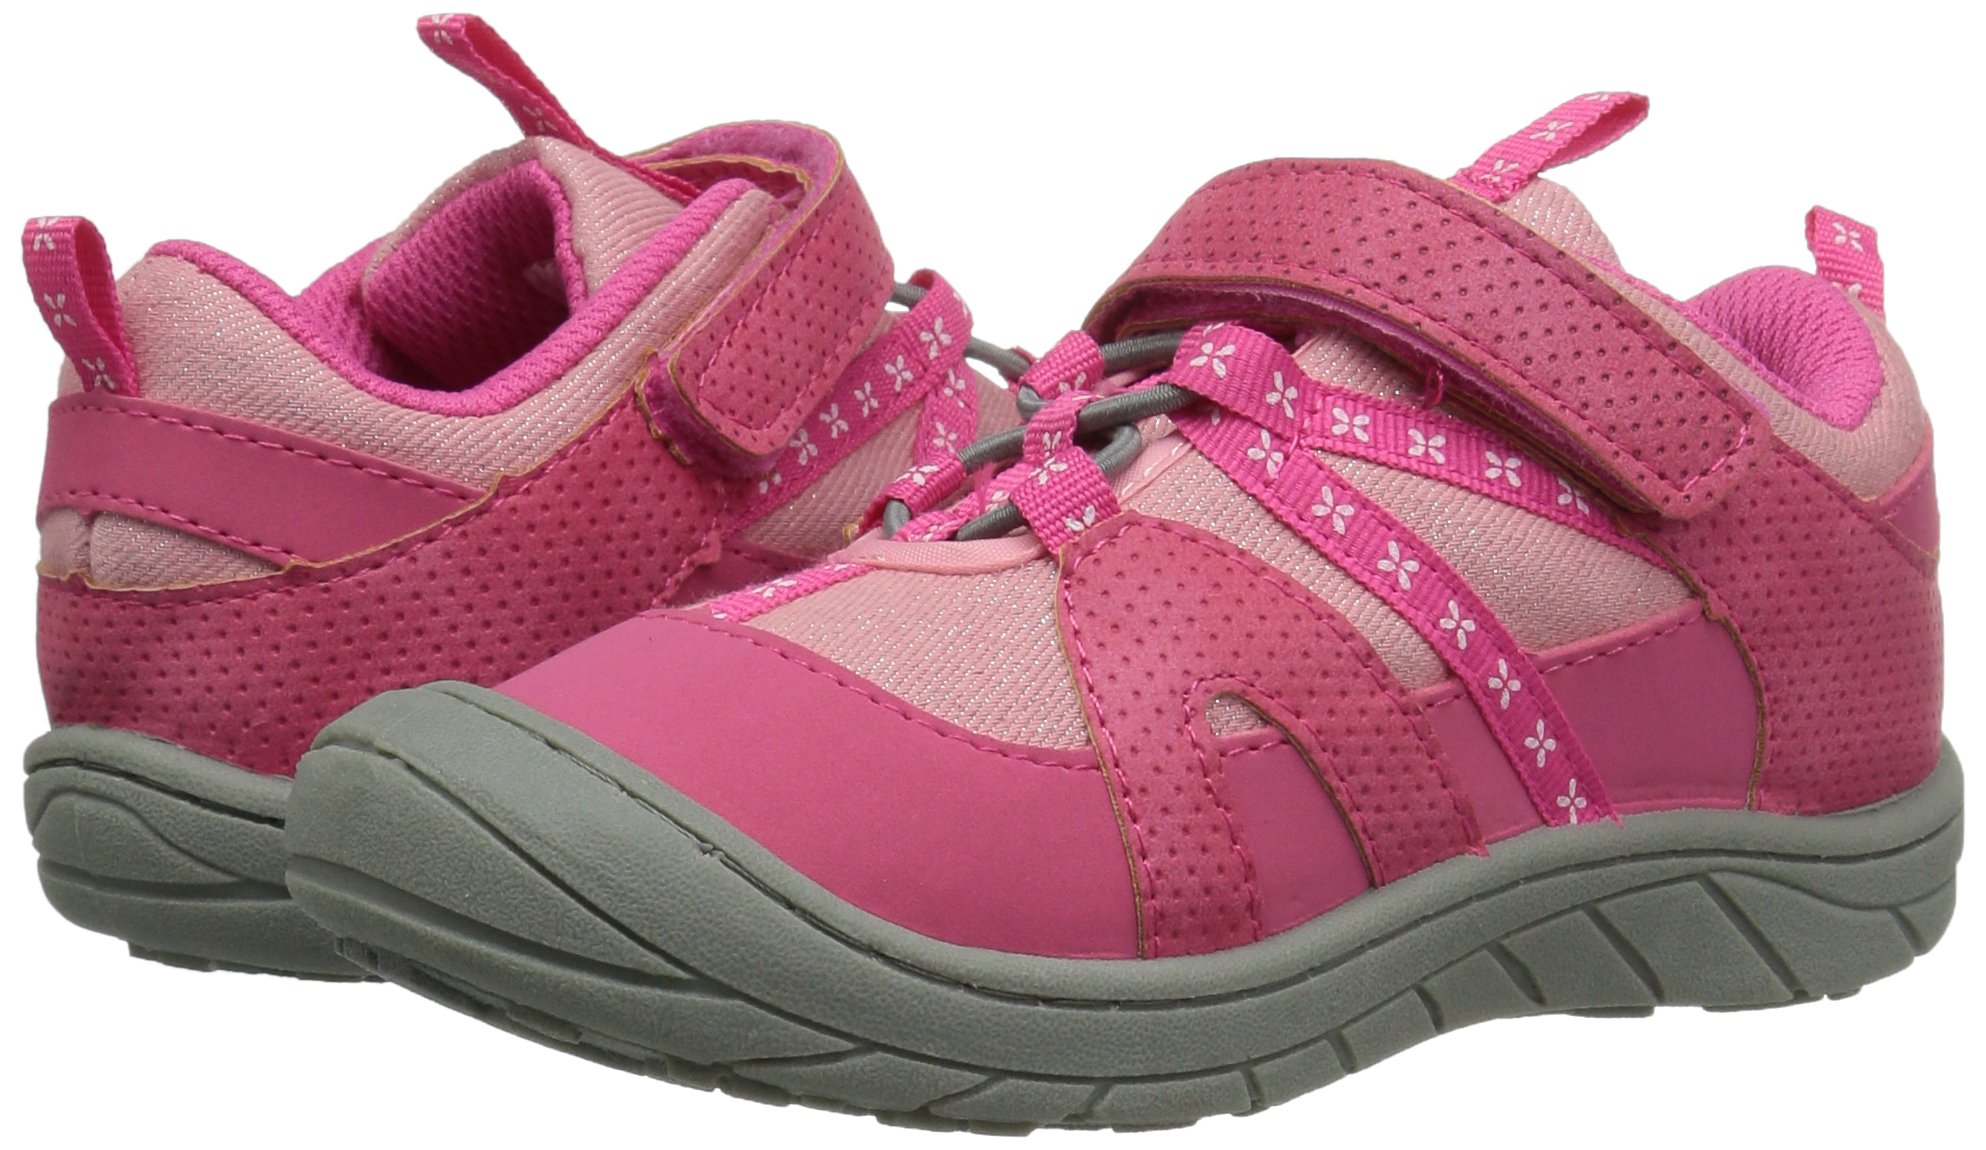 Northside Corvallis Comfort Flex Outdoor Sneaker Shoe Toddler/Little Kid